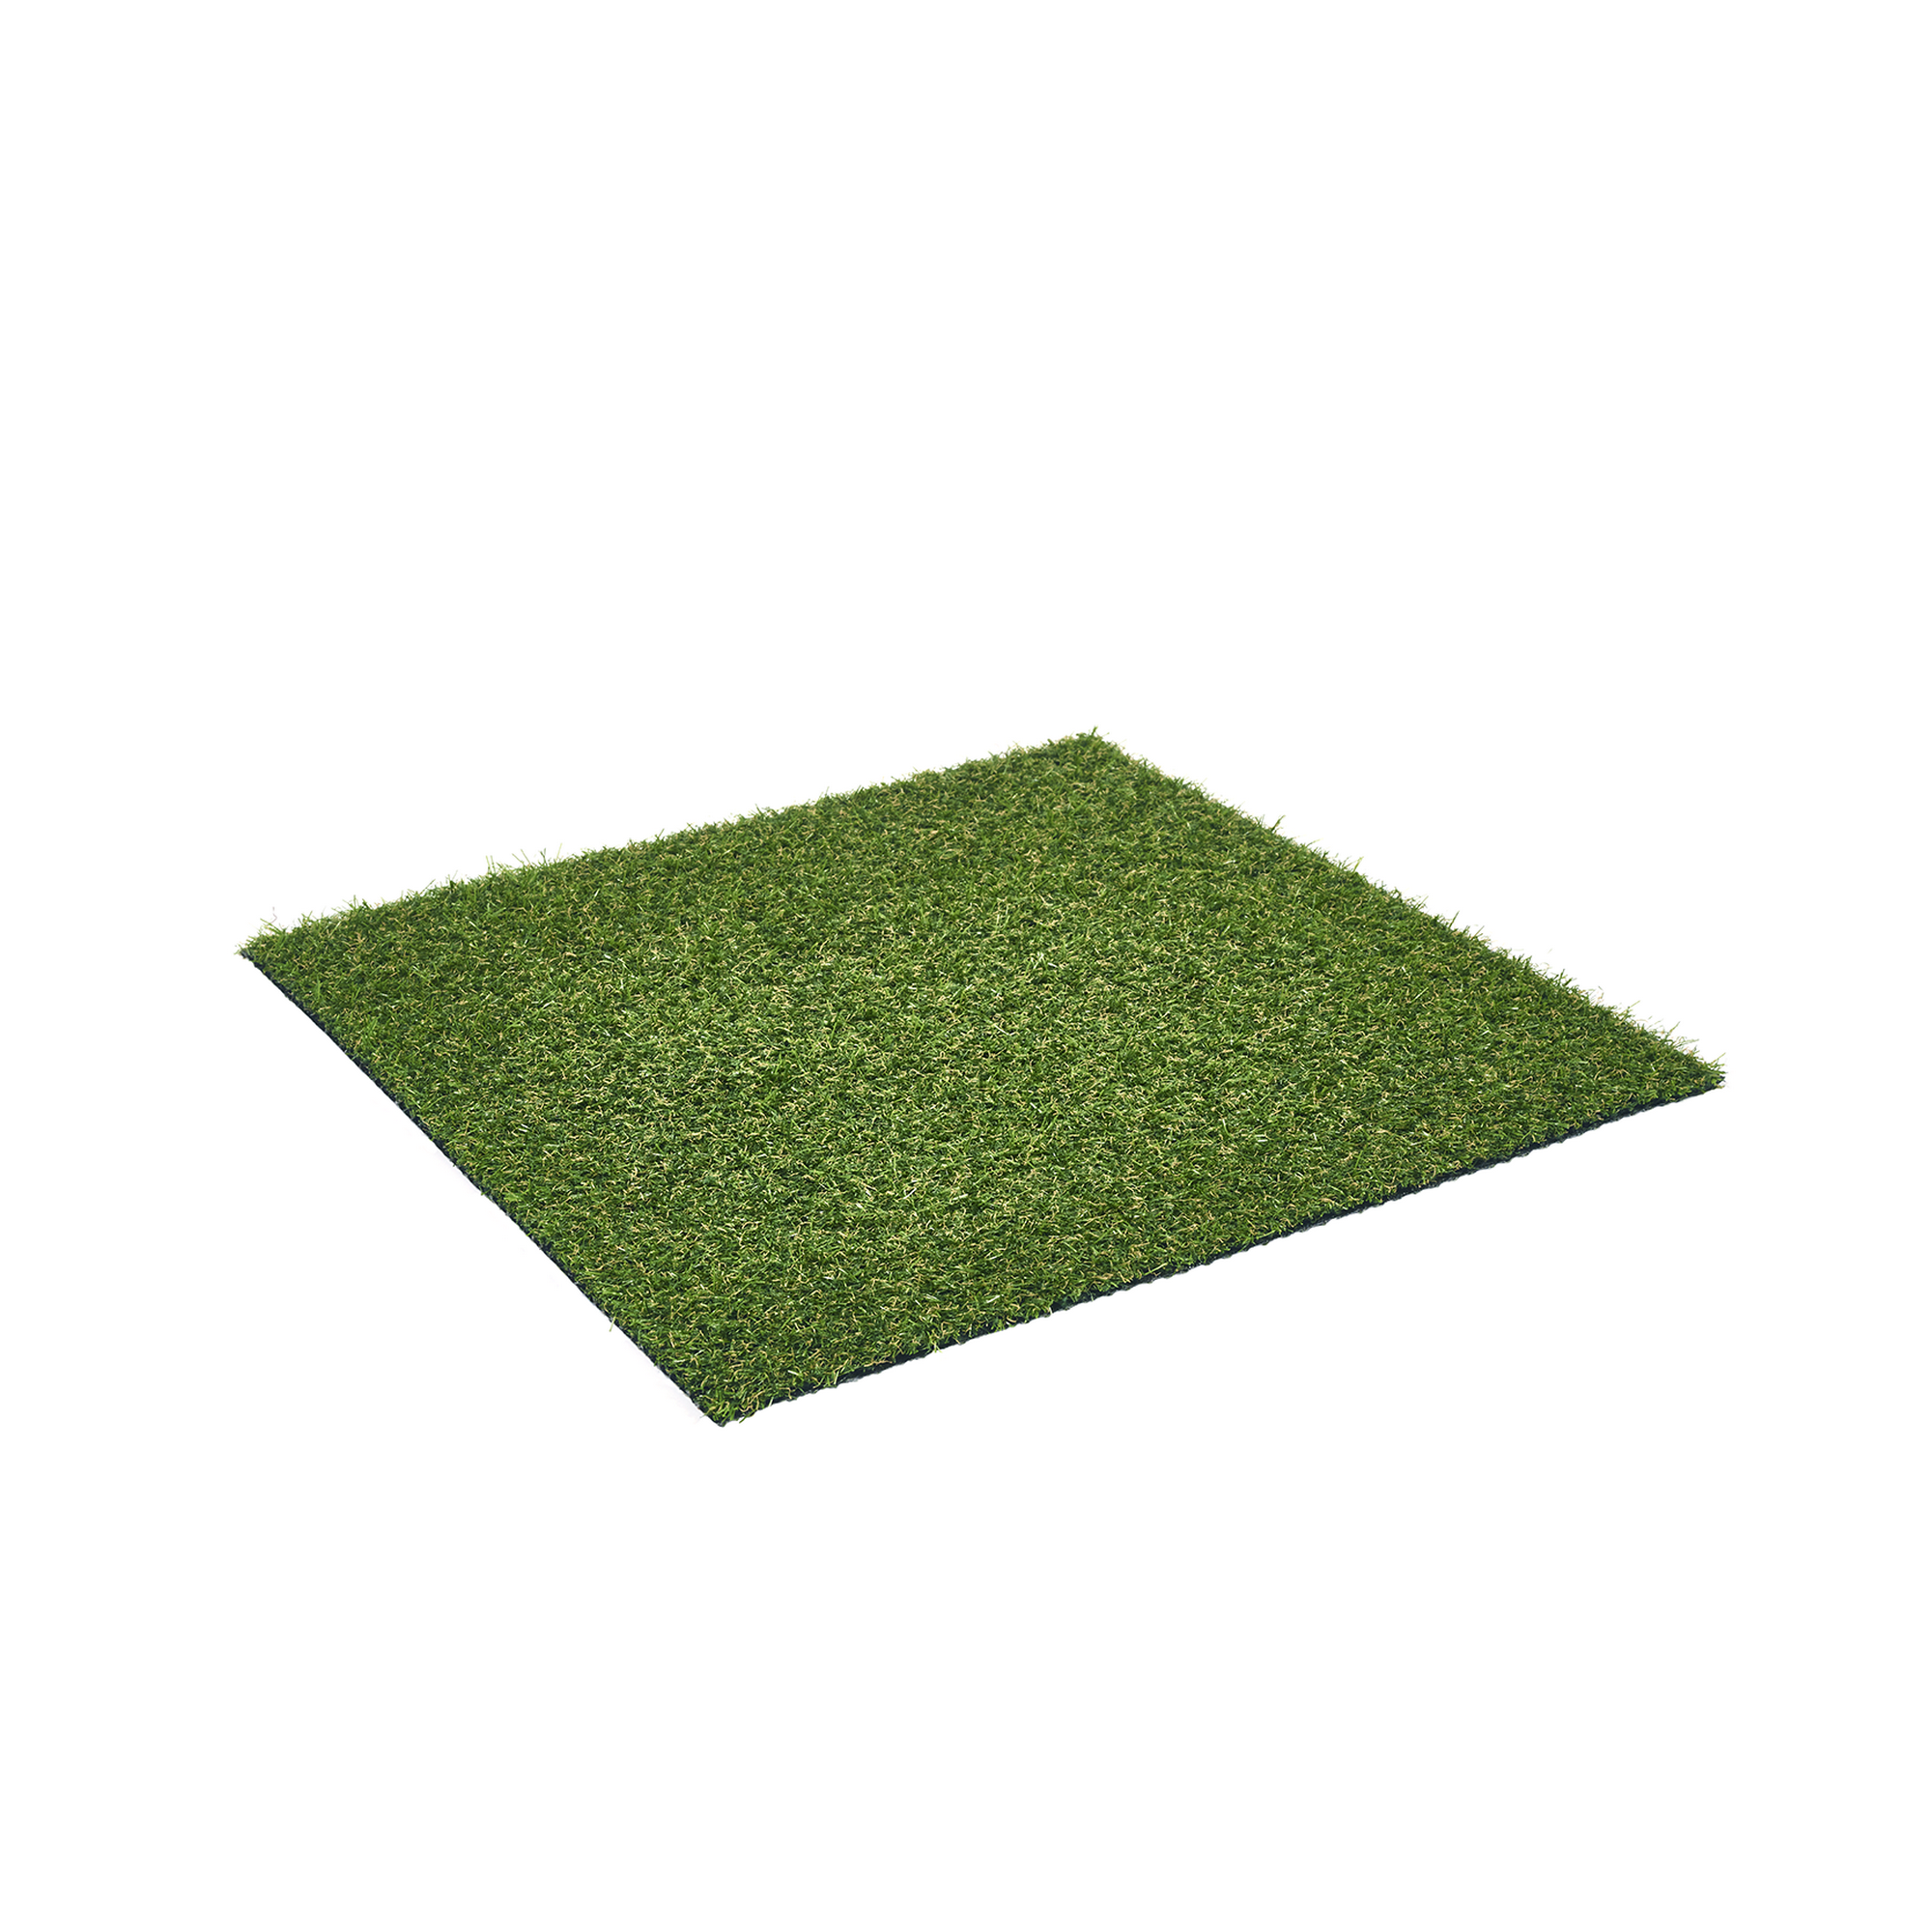 Rasenteppich 'Cocoon' Meterware grün, Breite 200 cm + product picture